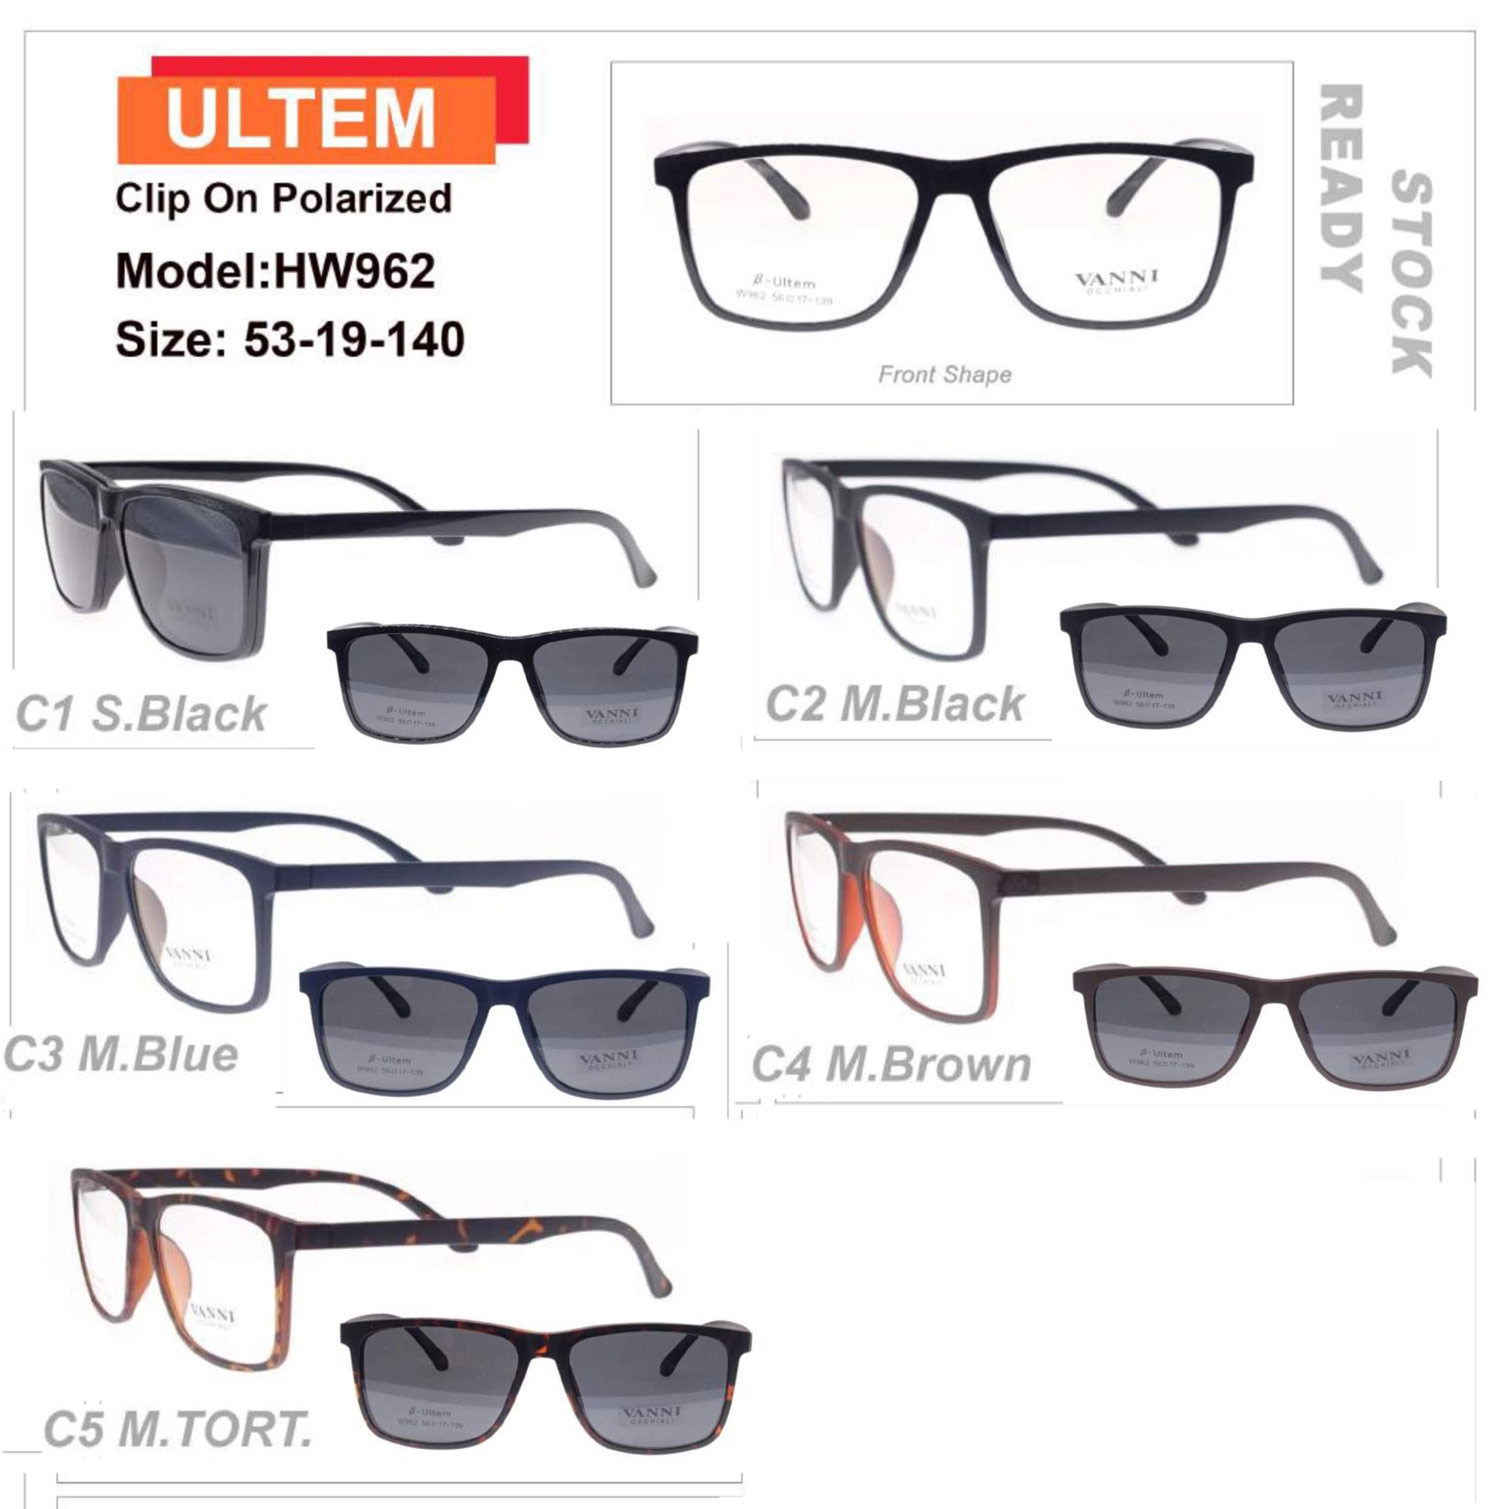 HW962 ULTEM optical fra